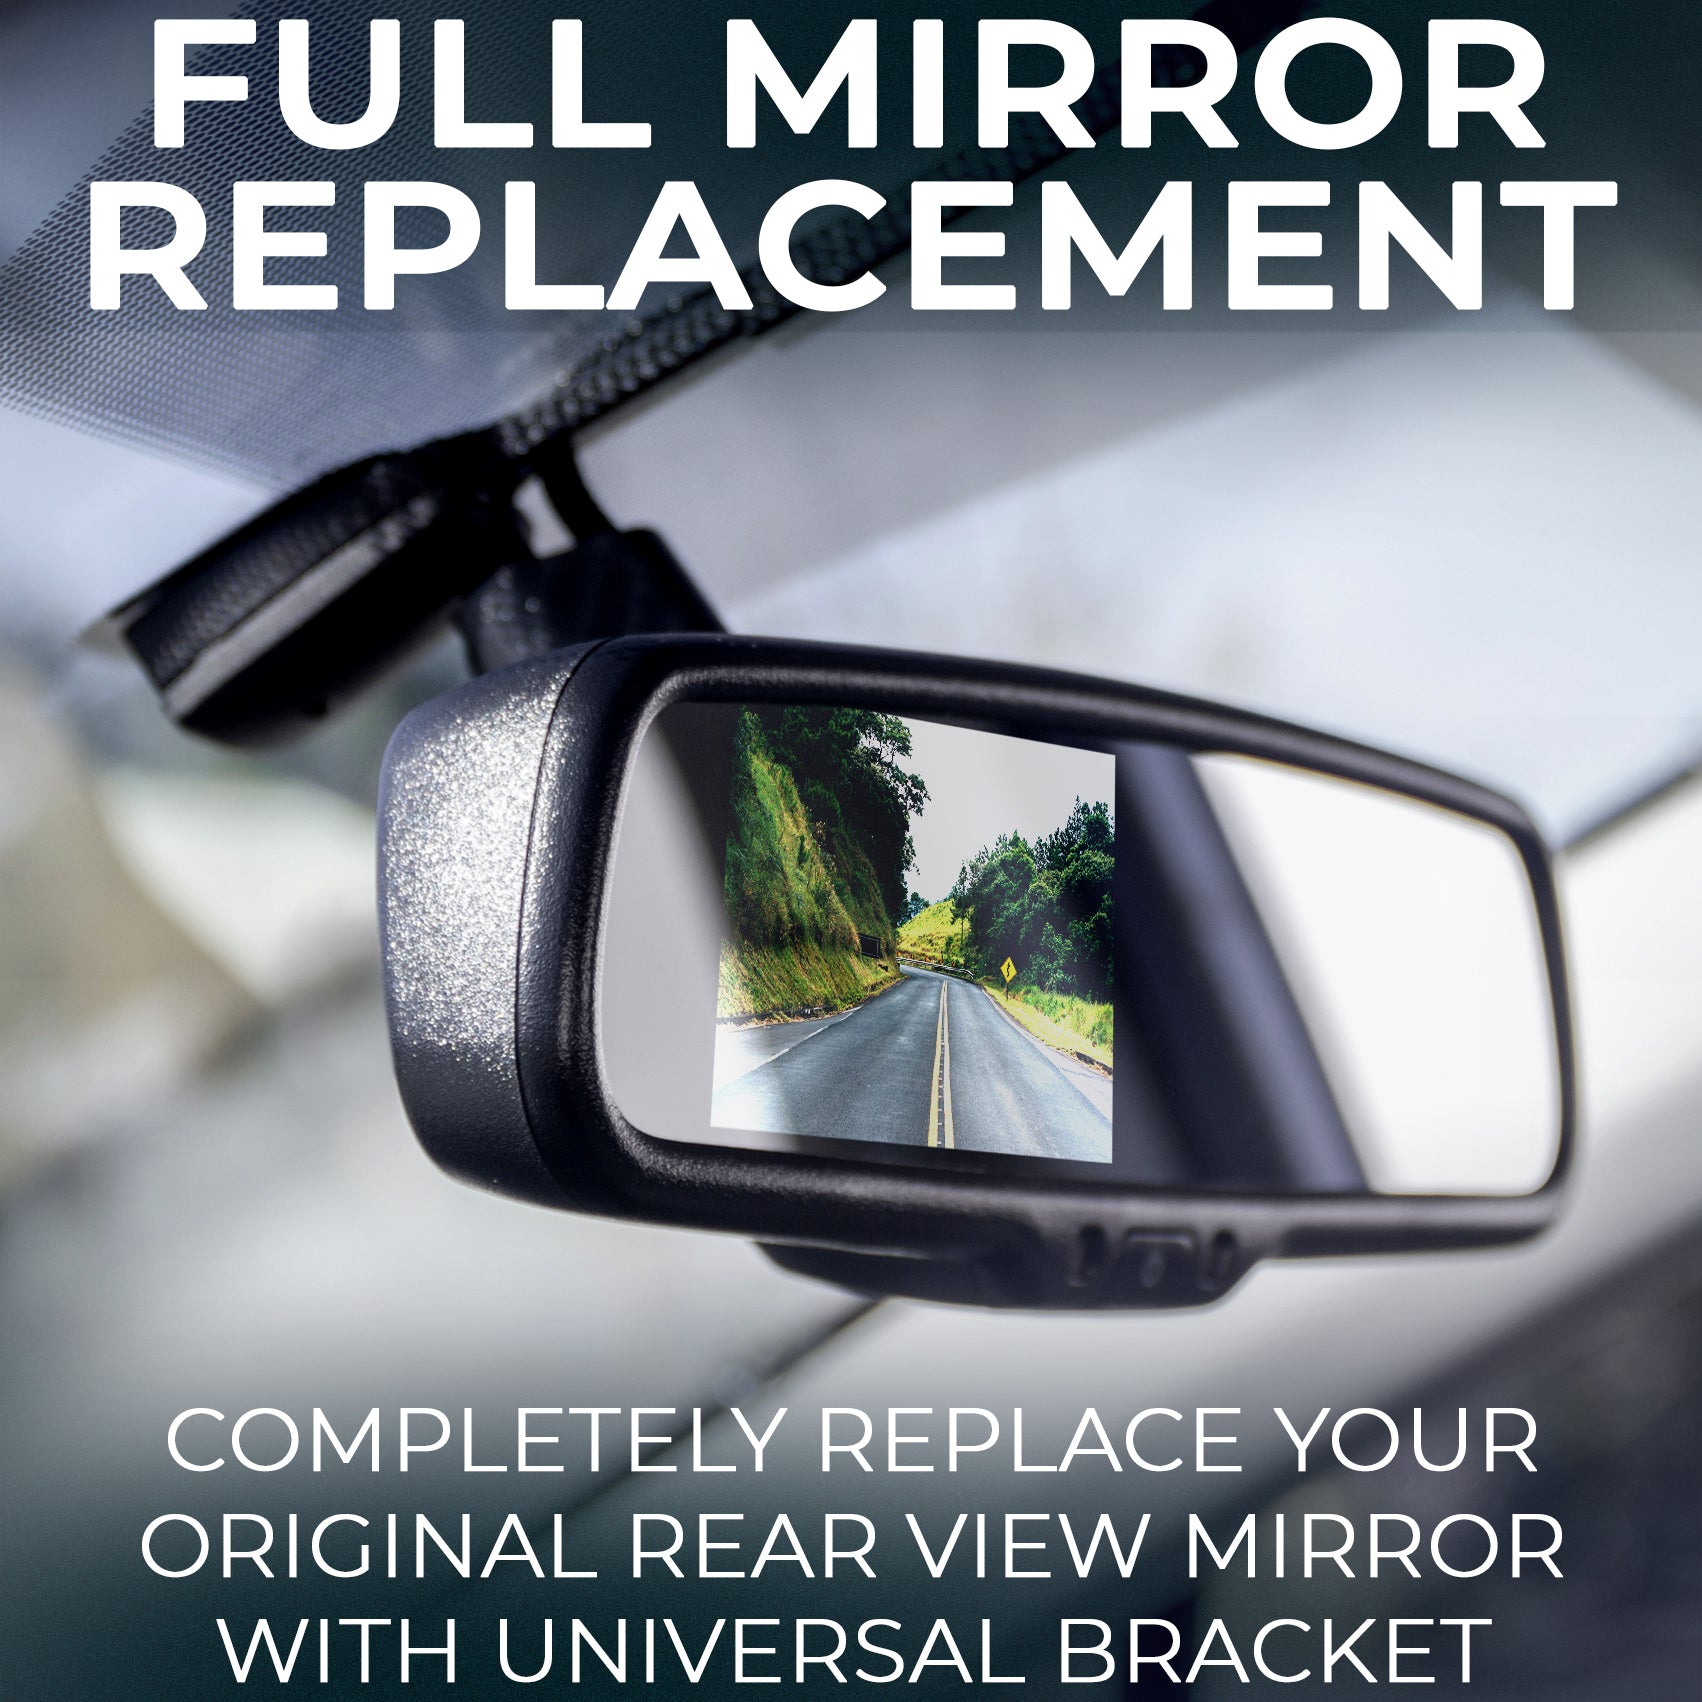 Rear View Mirror- Auto Bright/Dim, Compass, Temperature, Universal